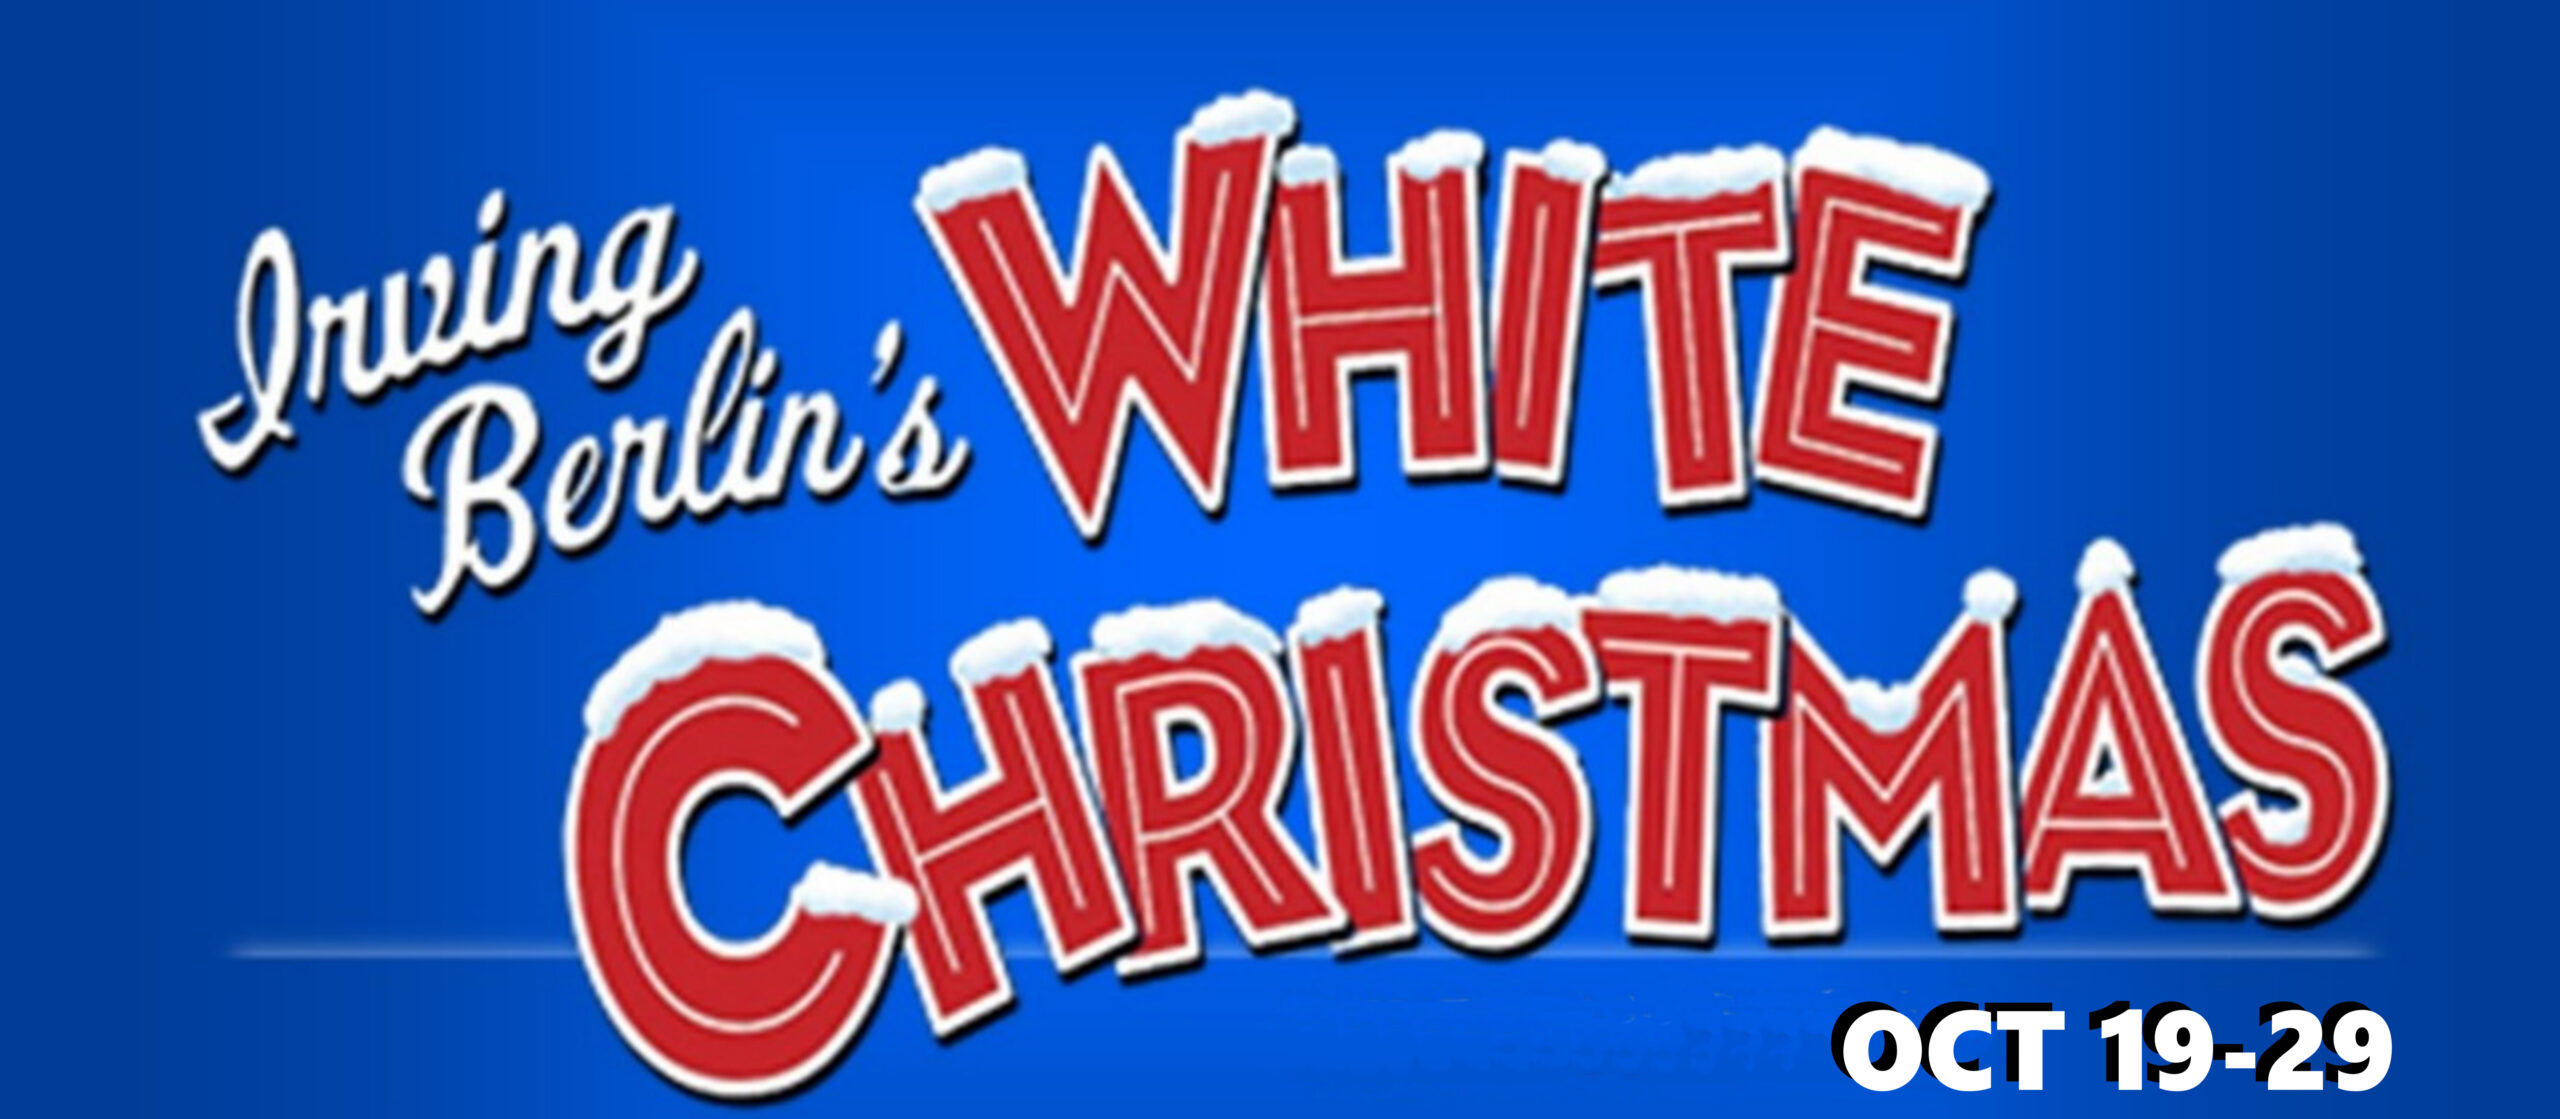 White Christmas Website